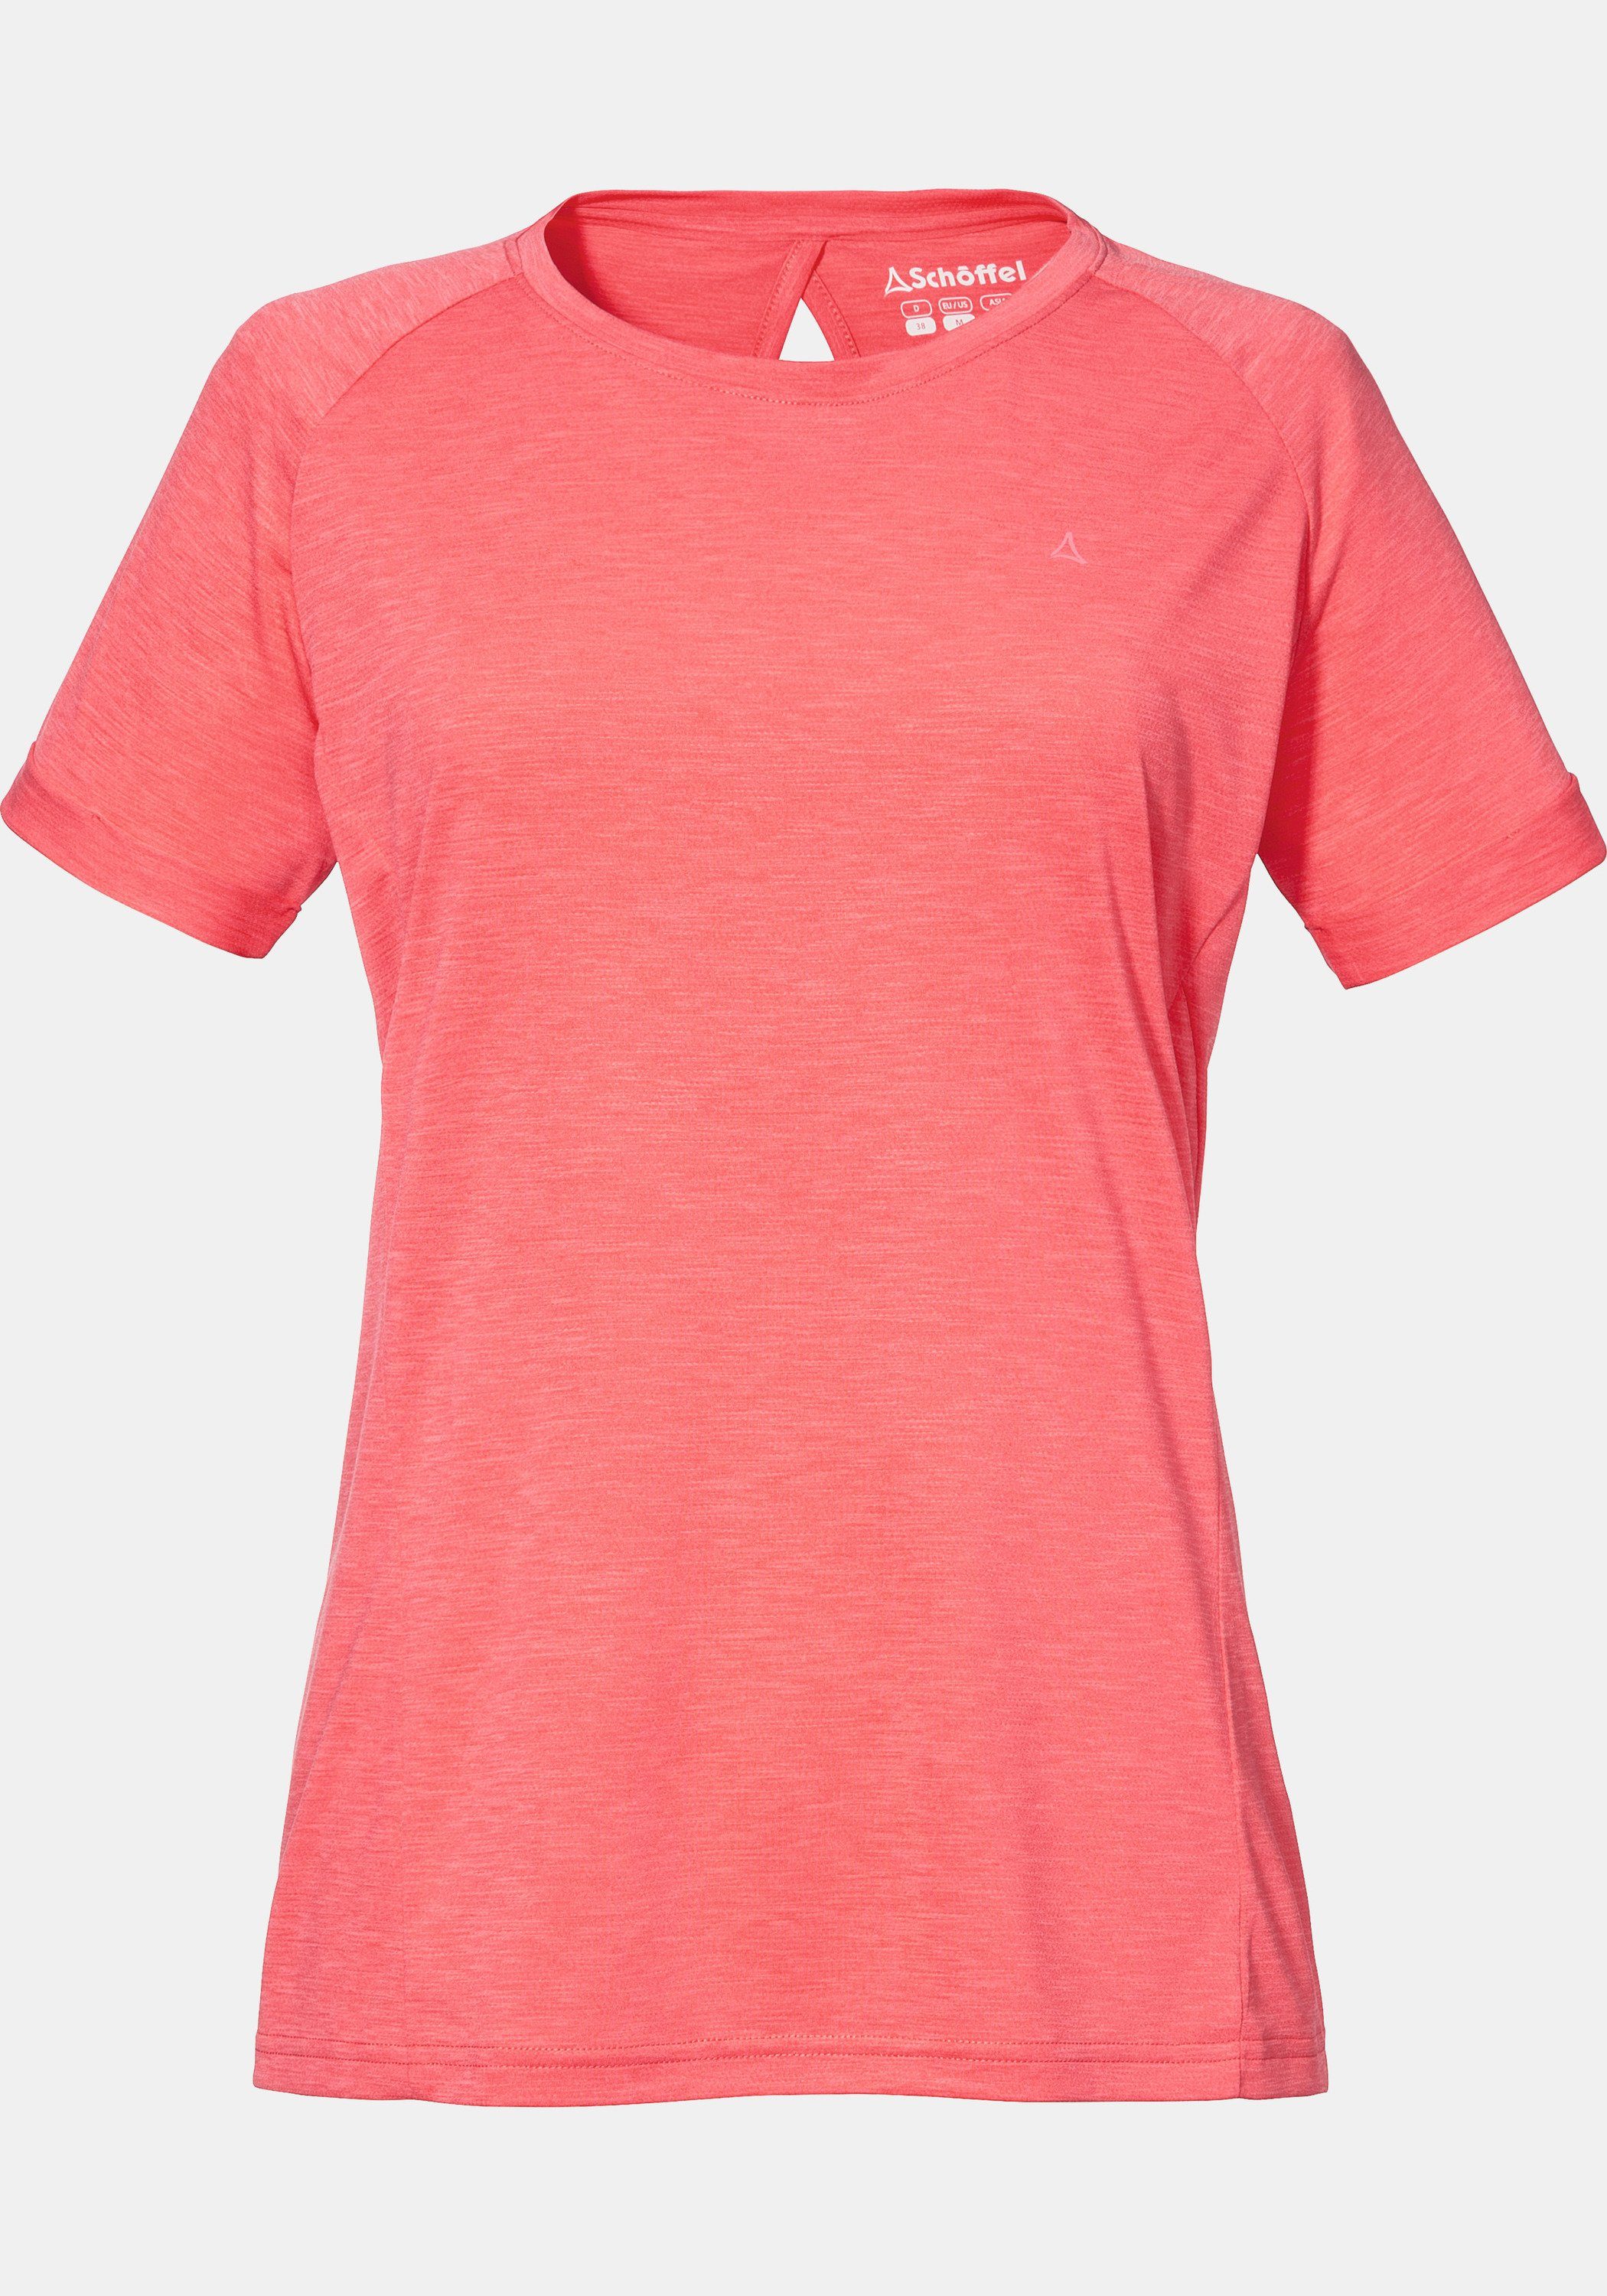 Schöffel Funktionsshirt »T Shirt Boise2 L« kaufen | OTTO